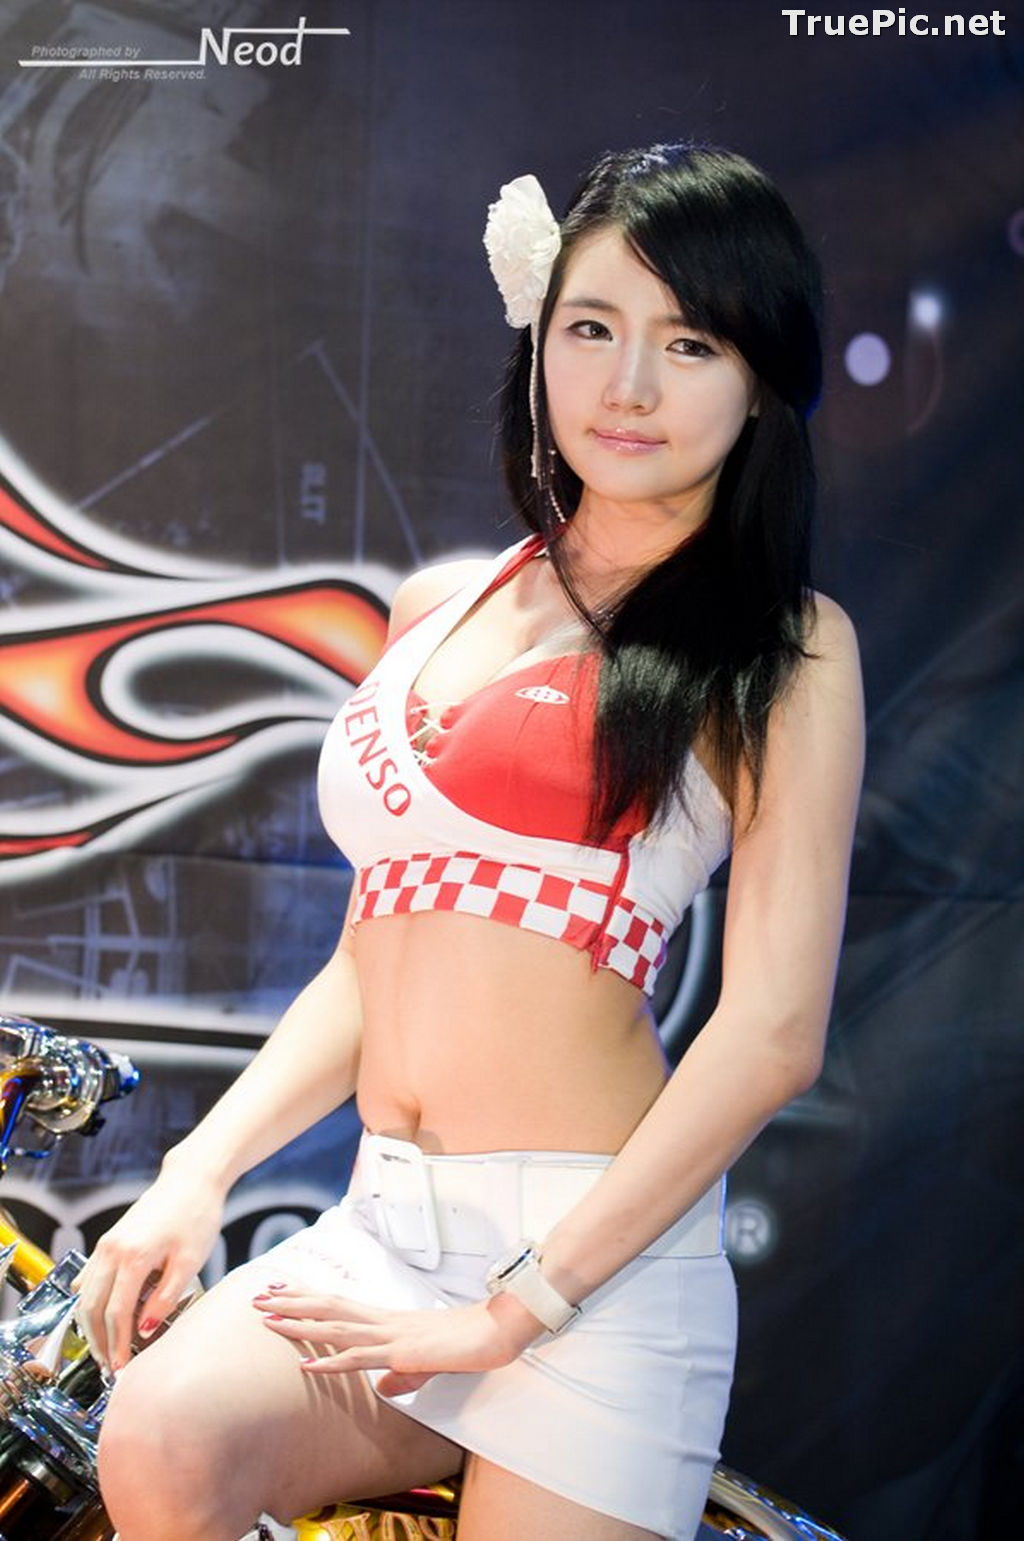 Image Best Beautiful Images Of Korean Racing Queen Han Ga Eun #4 - TruePic.net - Picture-59